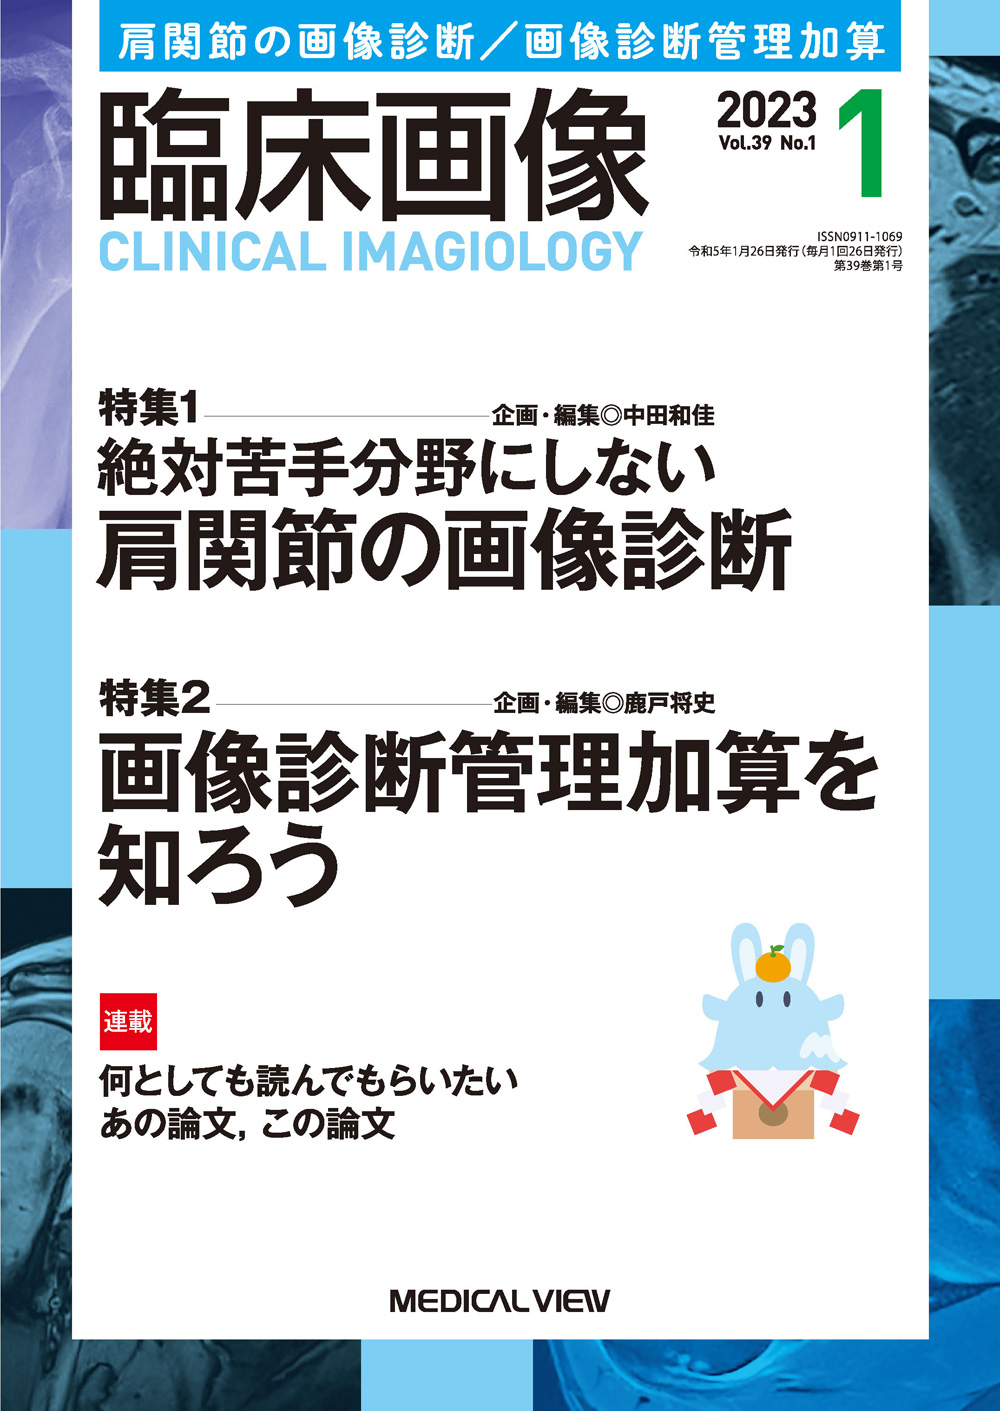 裁断済み】画像診断2022(vol.42) 1月〜12月号 | chidori.co